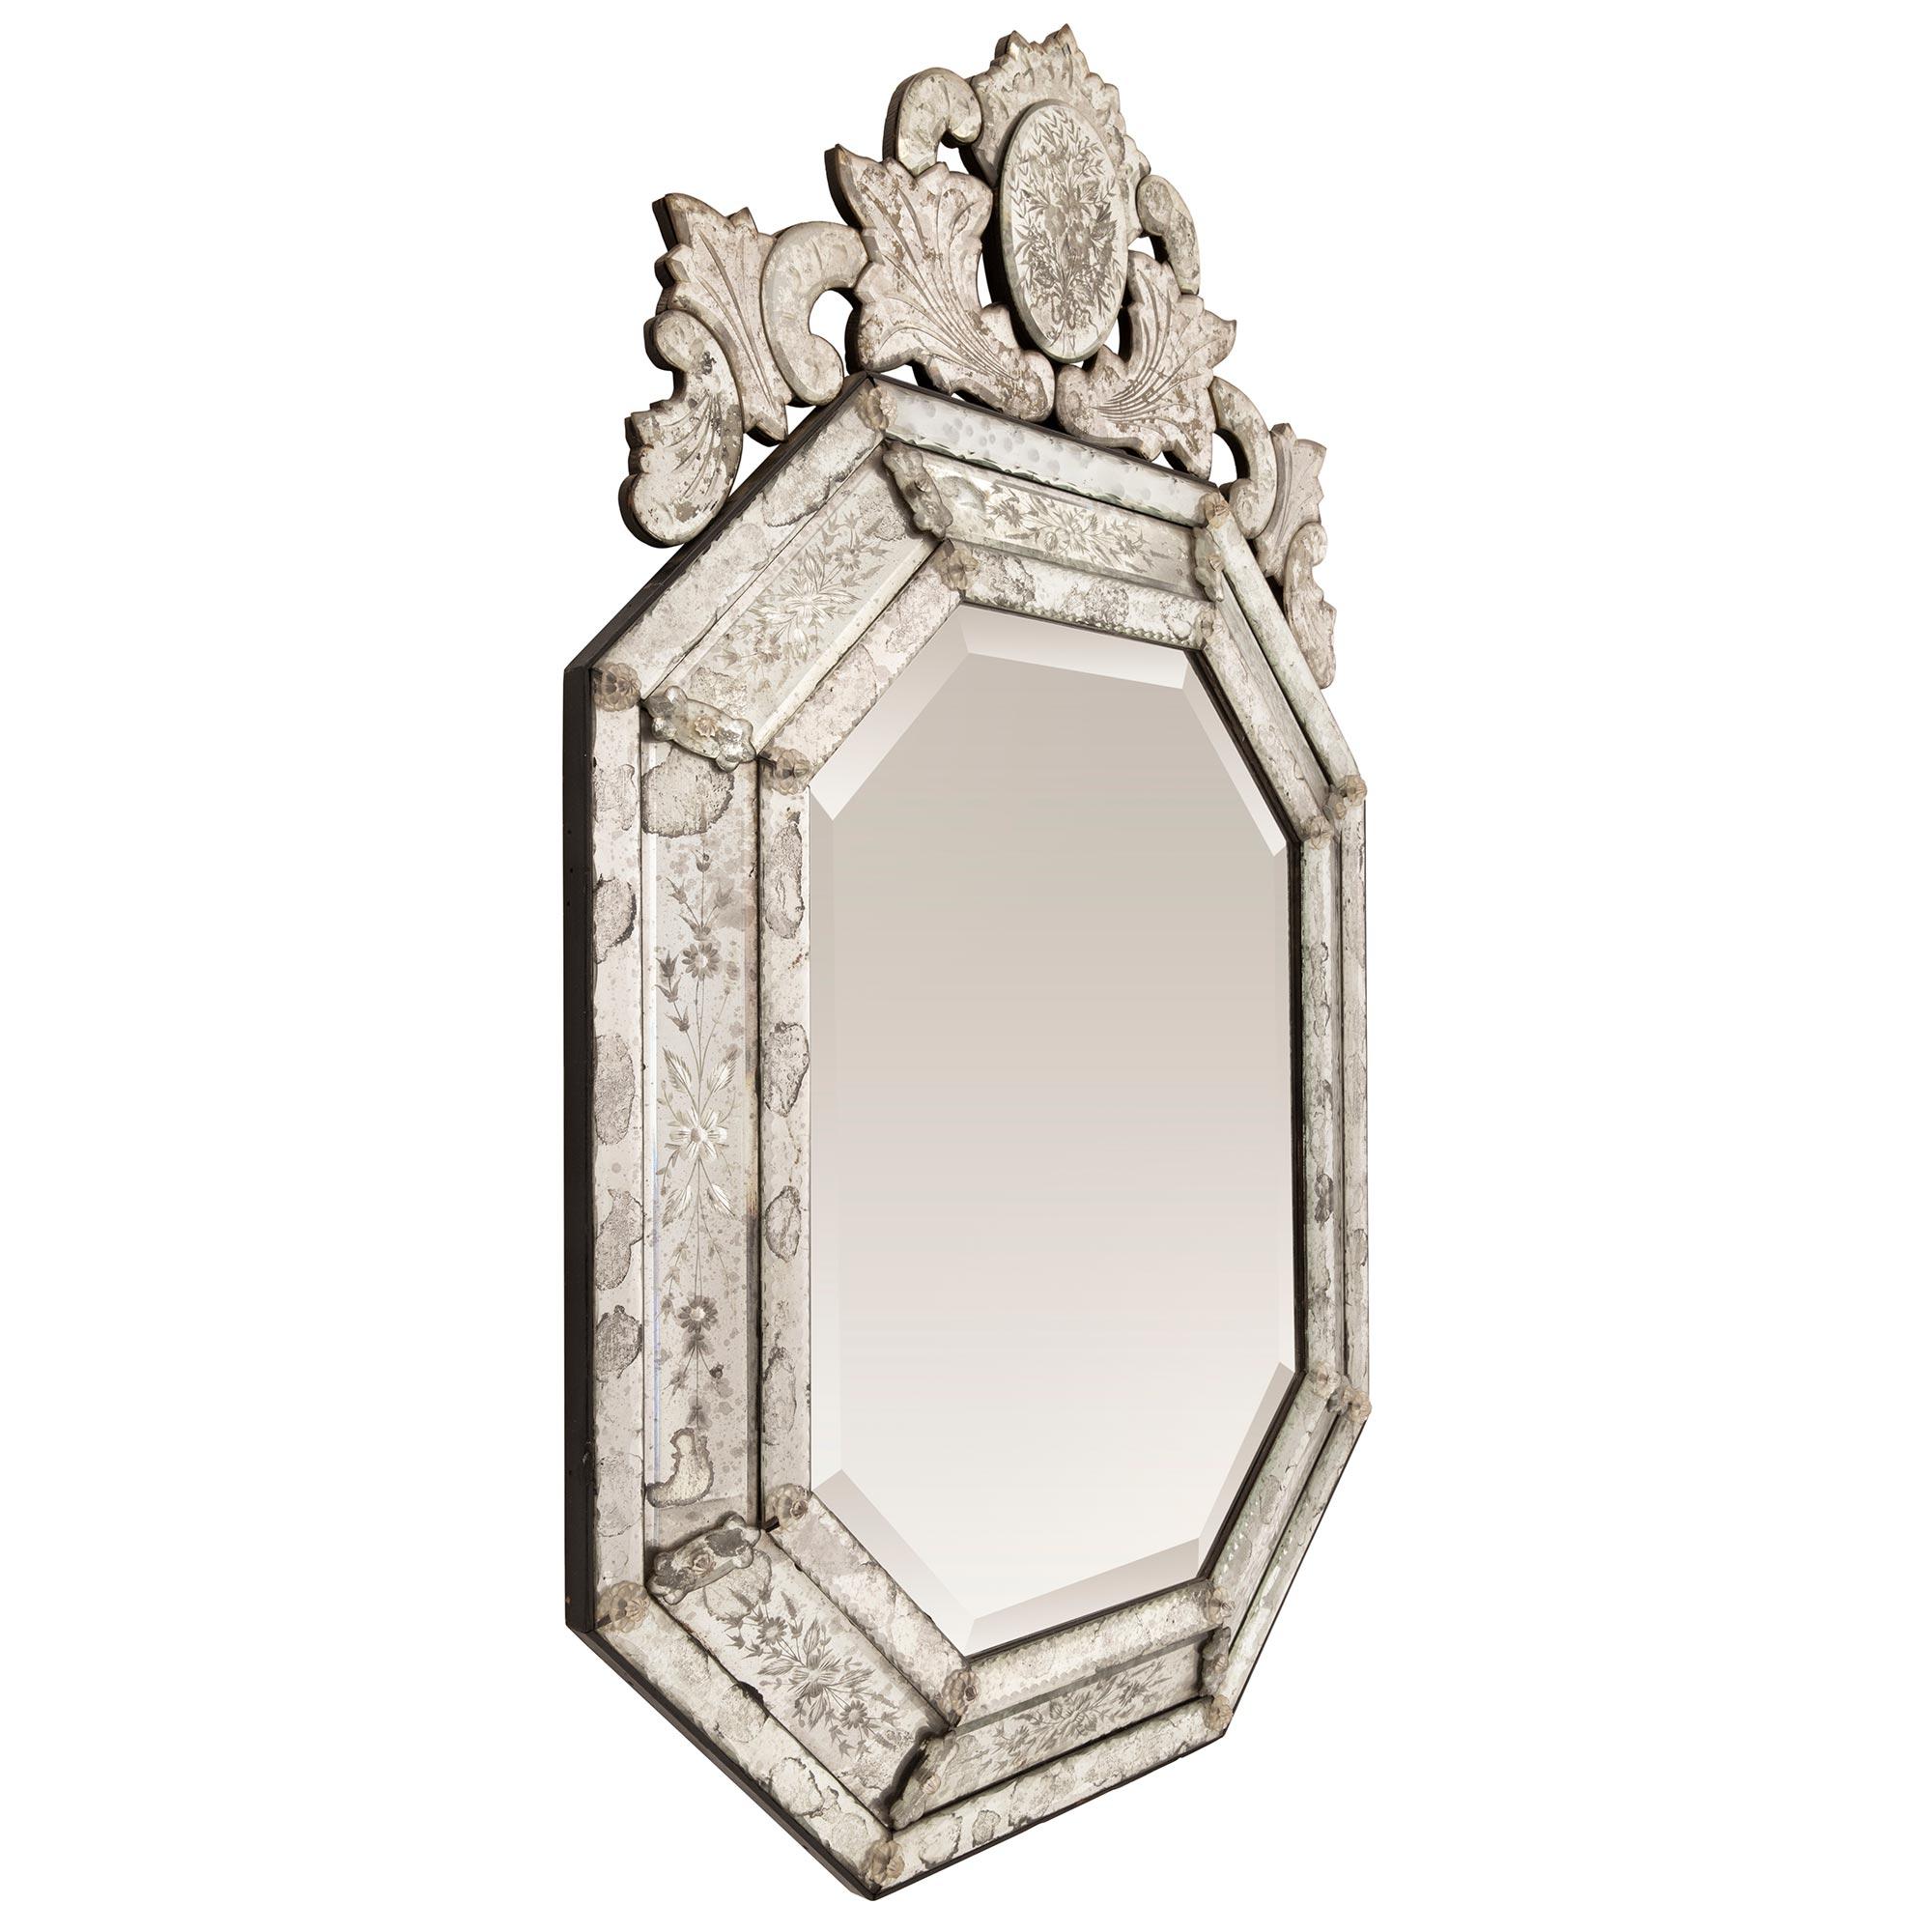 Miroir de forme octogonale de style vénitien italien du 19ème siècle, saisissant et extrêmement décoratif. Ce magnifique miroir a conservé toutes ses plaques de miroir d'origine, la plaque centrale présentant un élégant biseau. Le bord est entouré